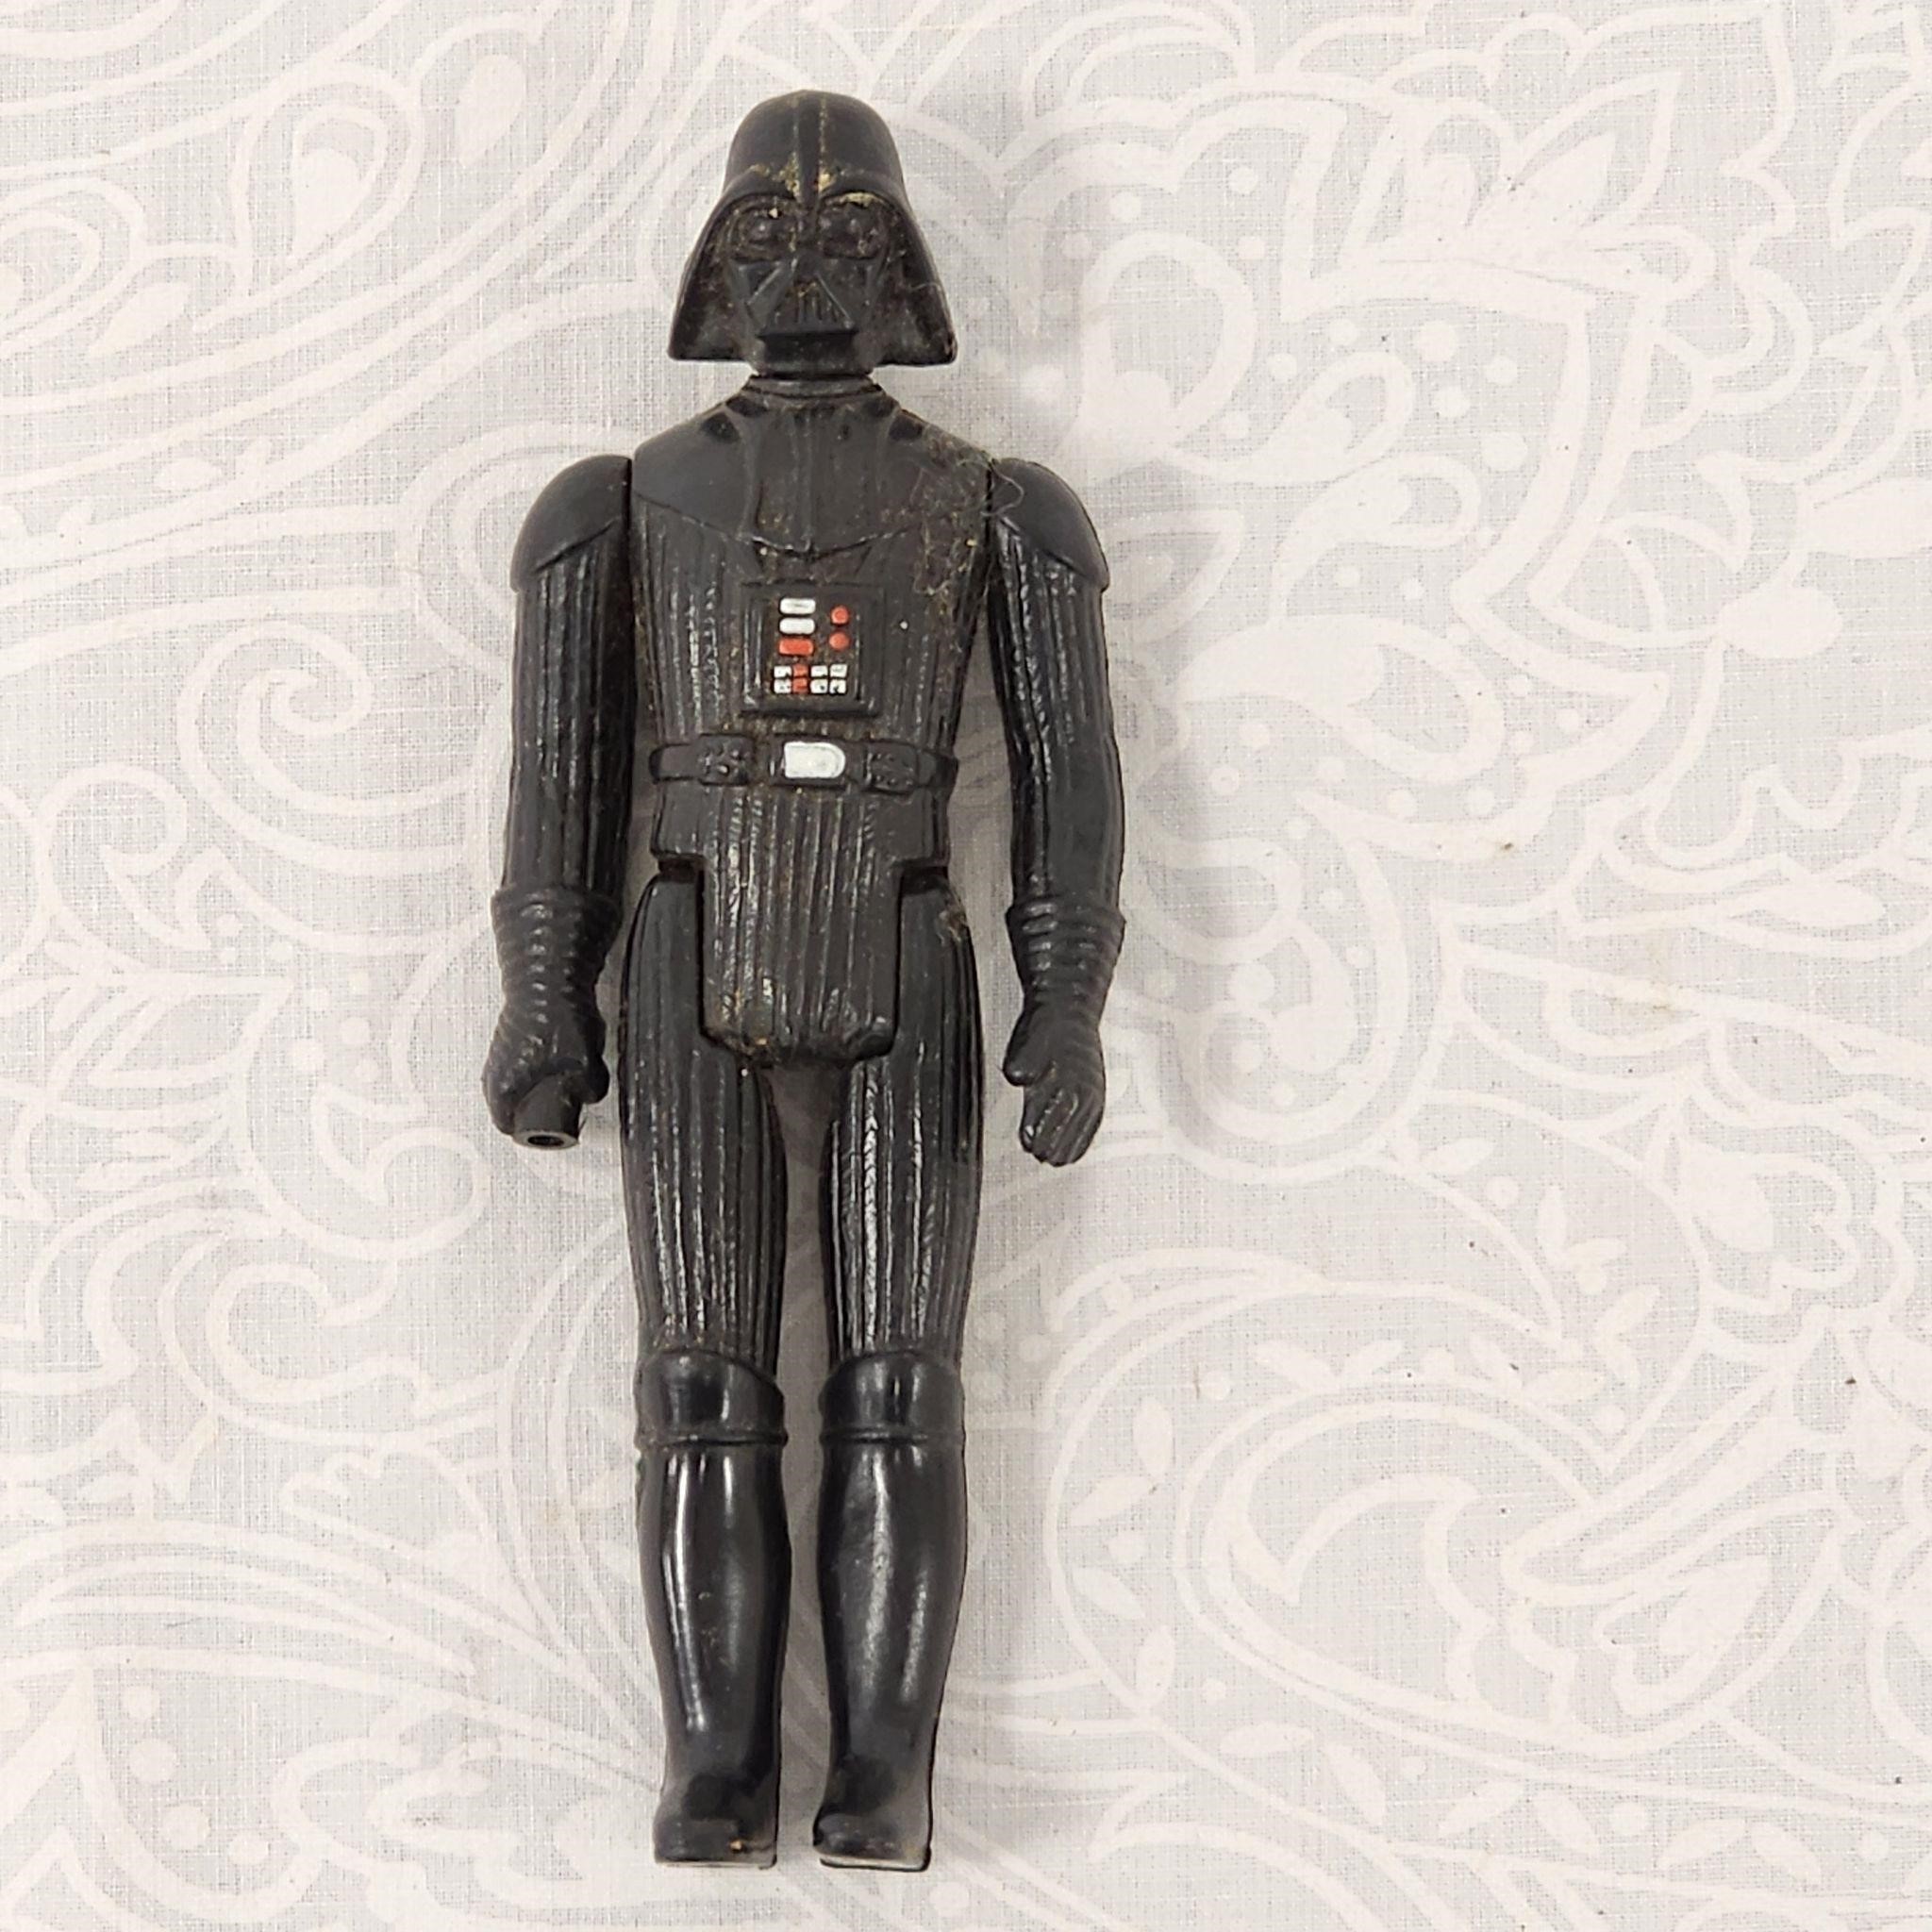 Rare Original 1977 Star Wars Vintage Darth Vader